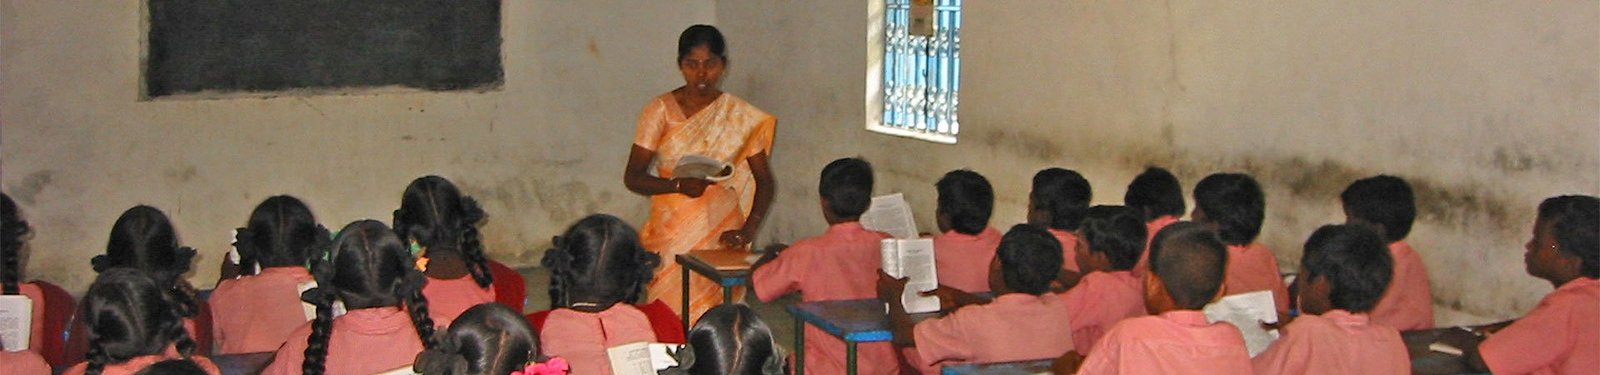 Alumnes a classe de l'Escola Parameswar